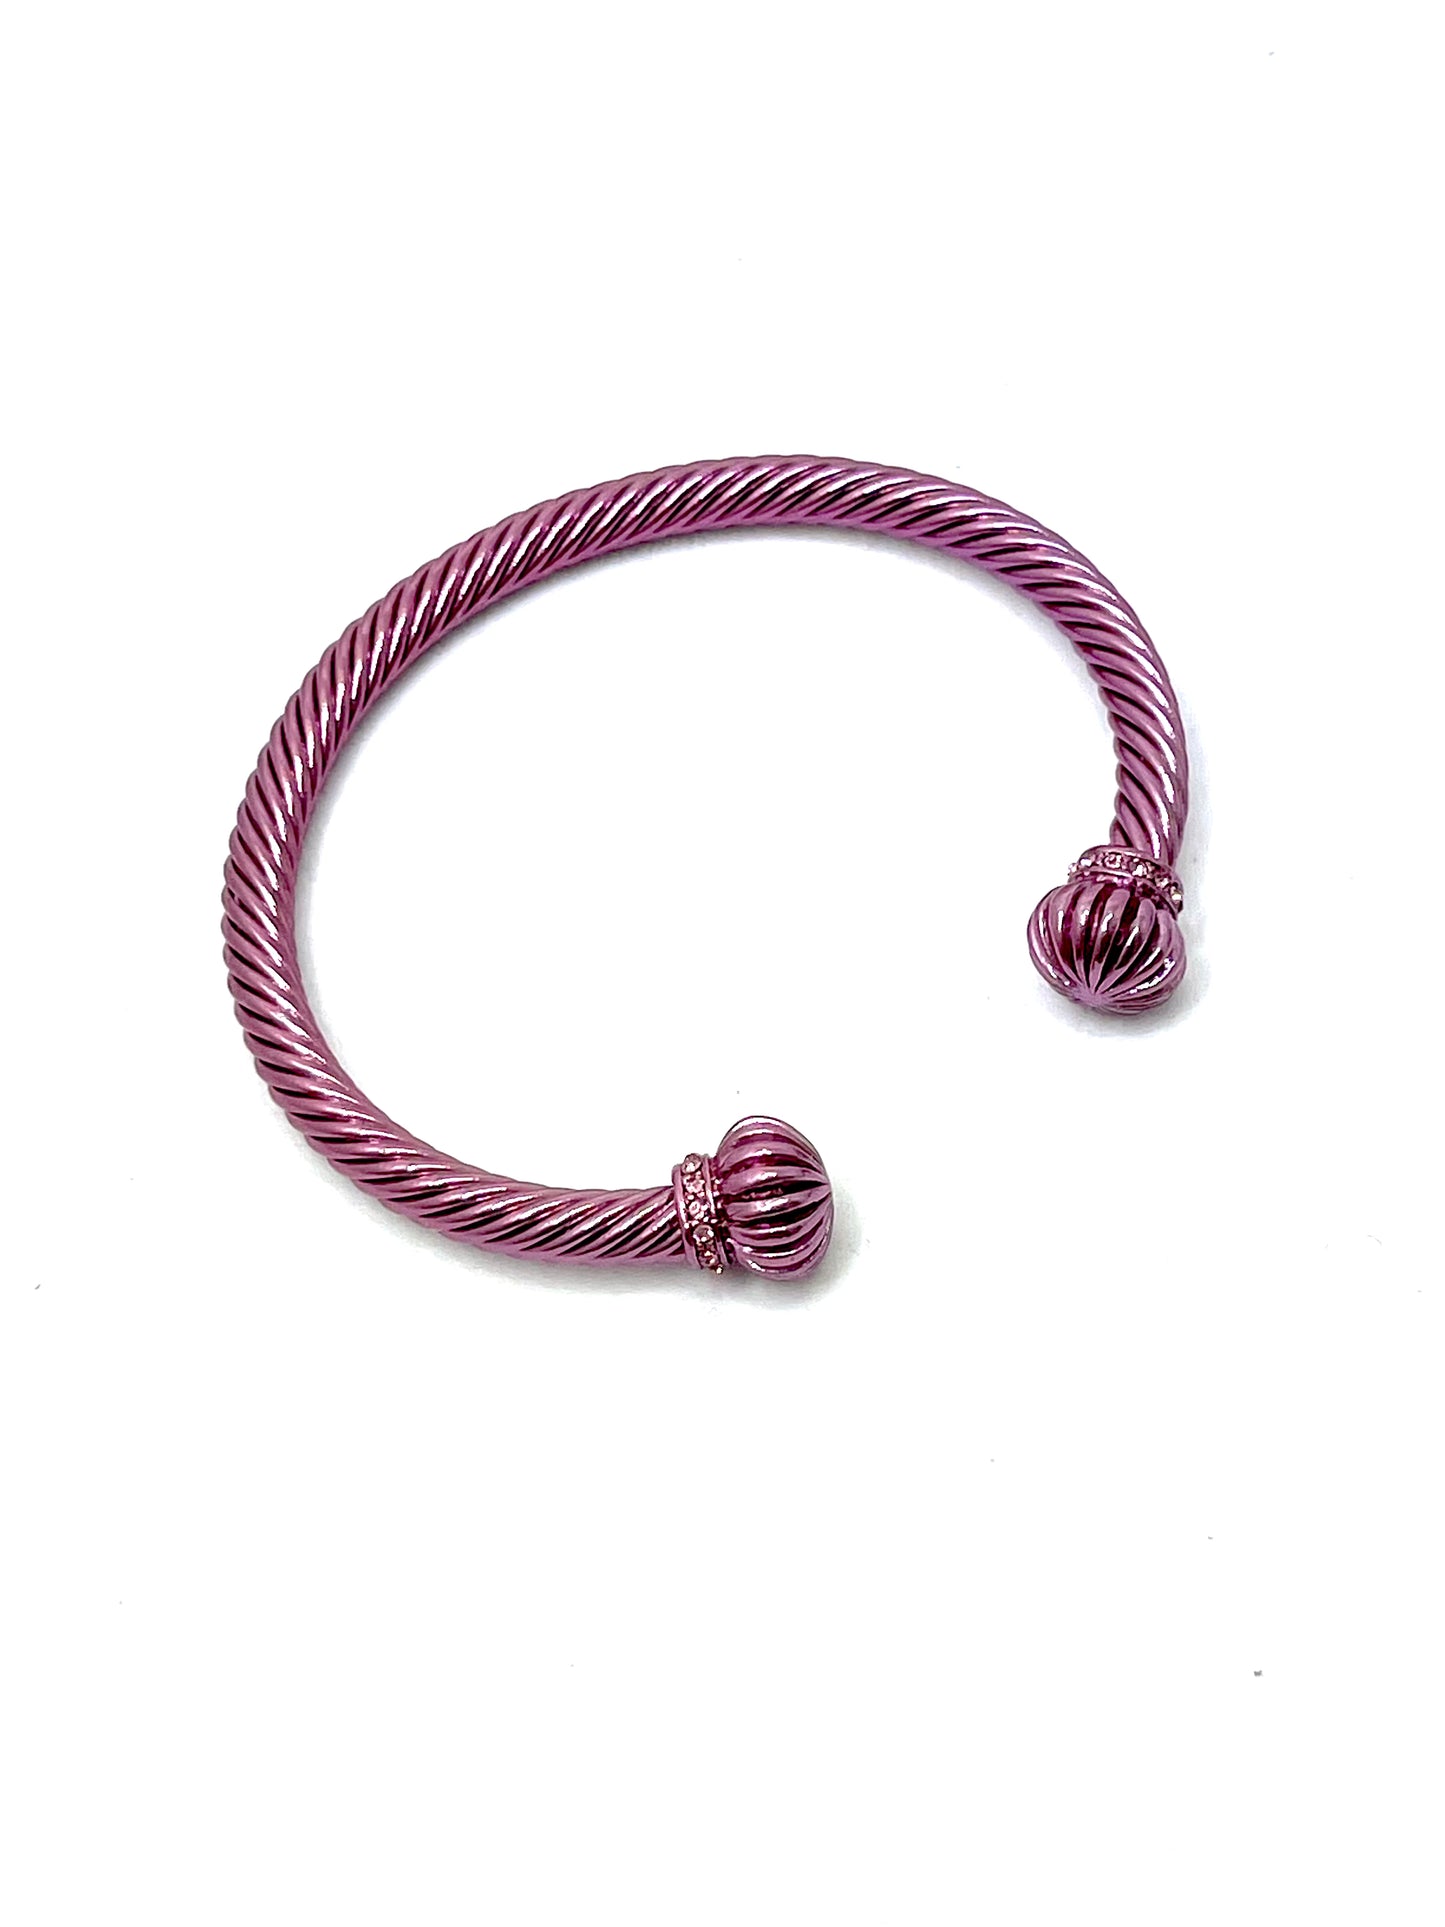 Renaissance Metallic Cable Bracelet